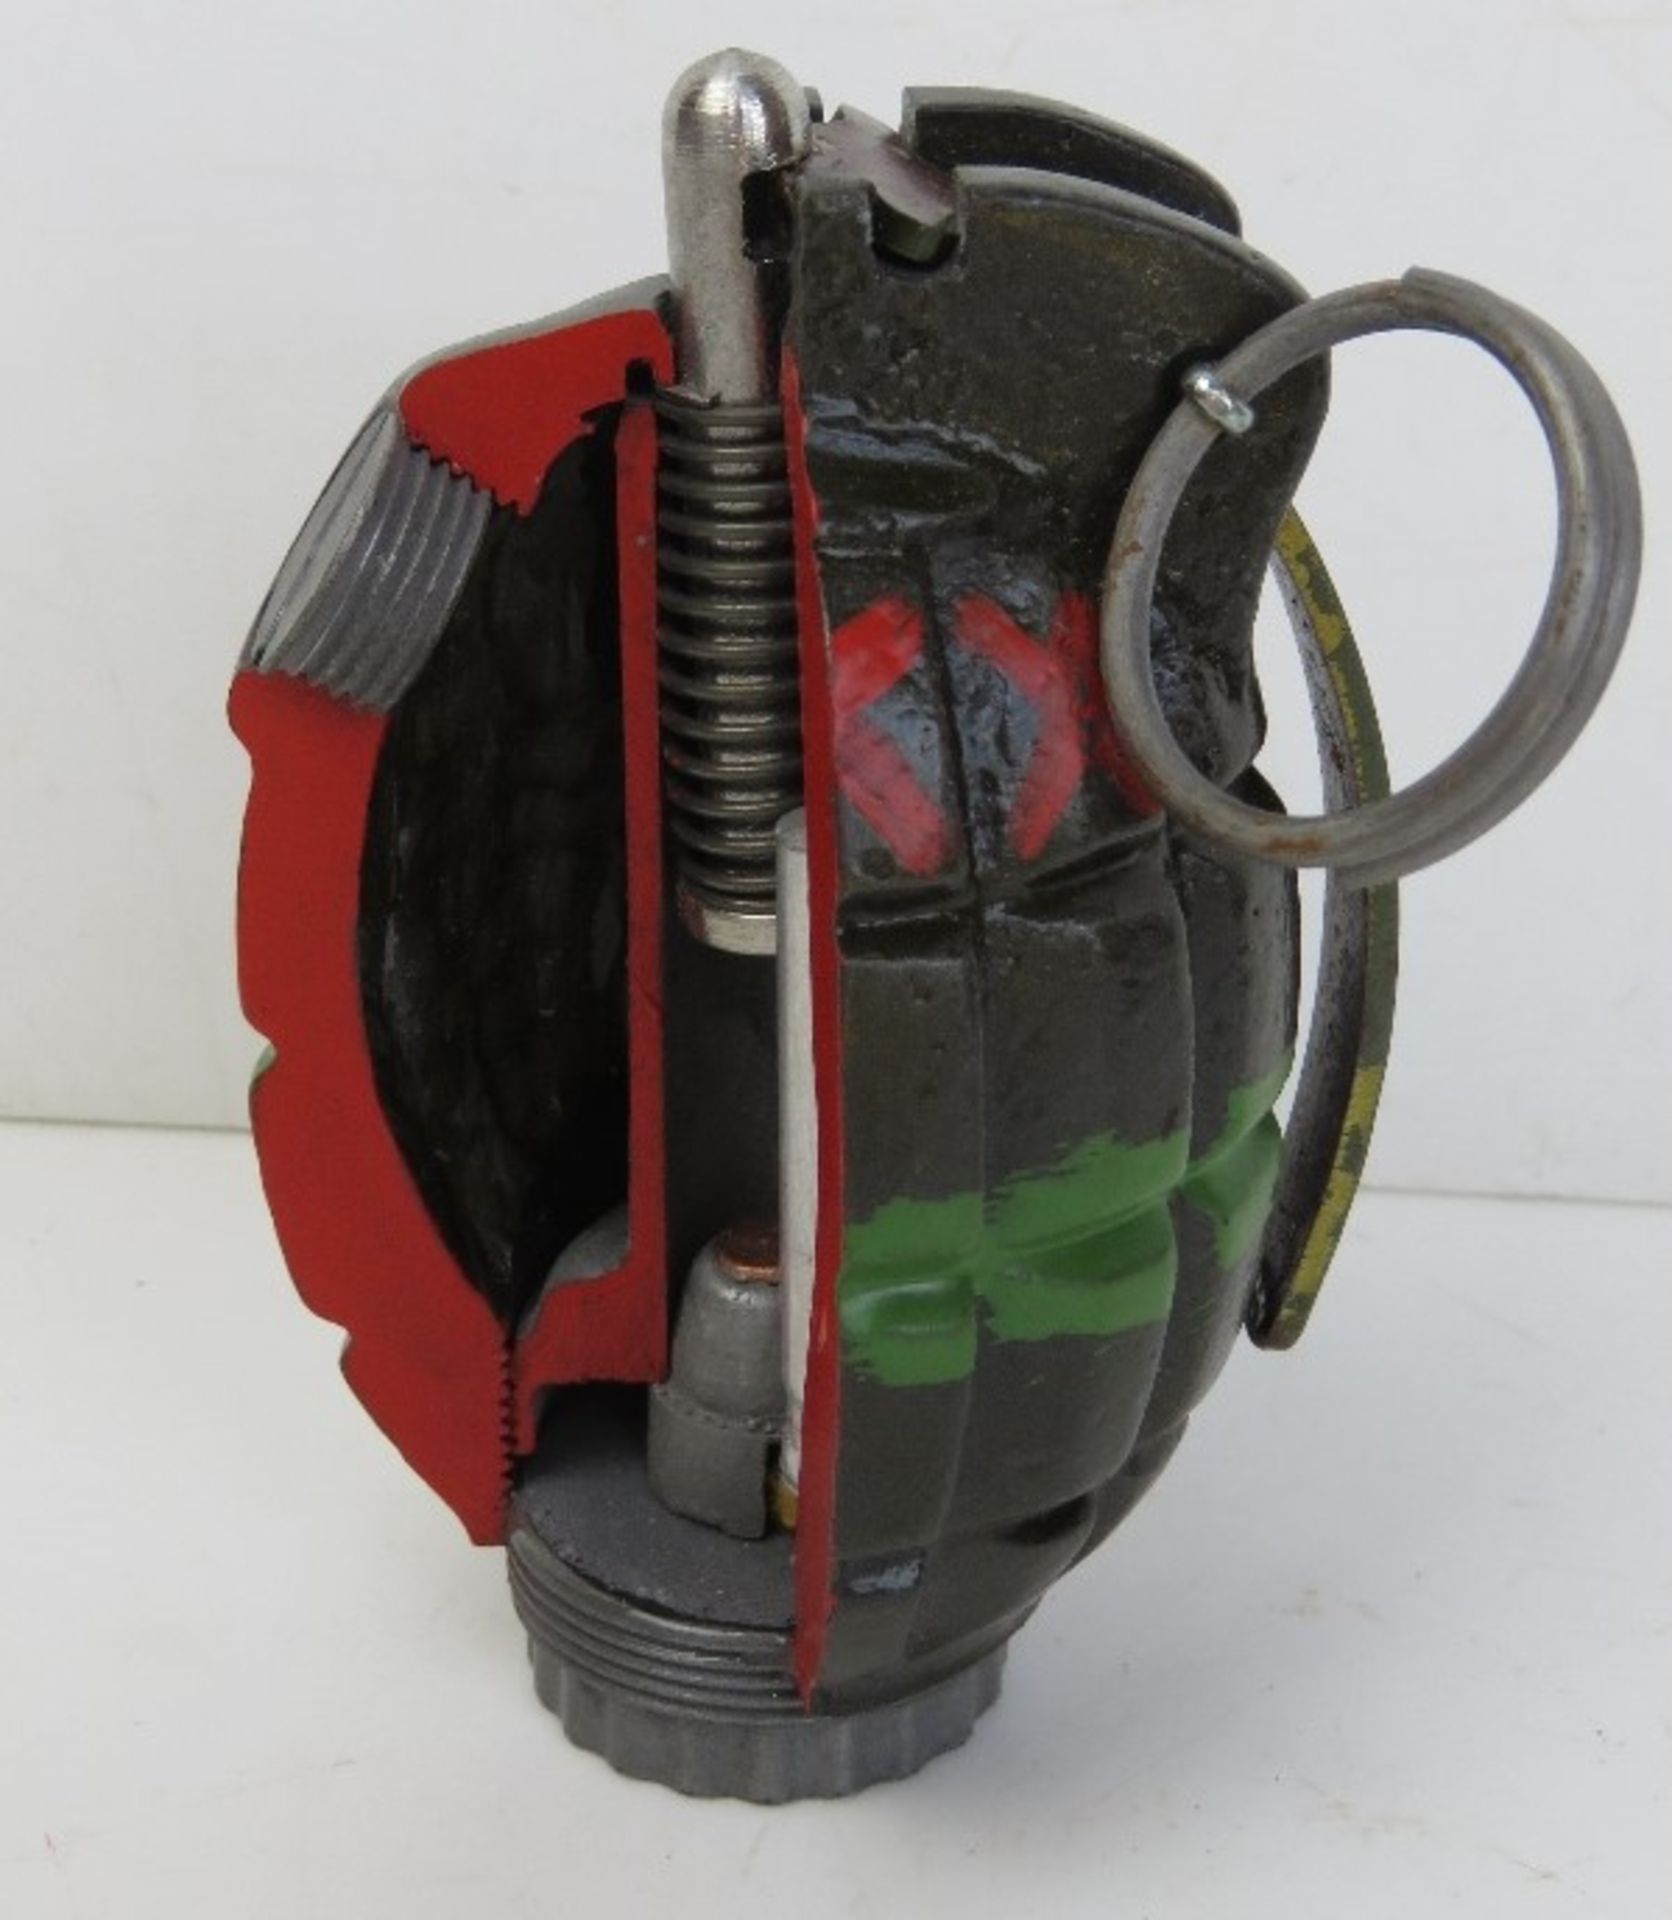 An inert resin No.36 Mills cutaway grenade.